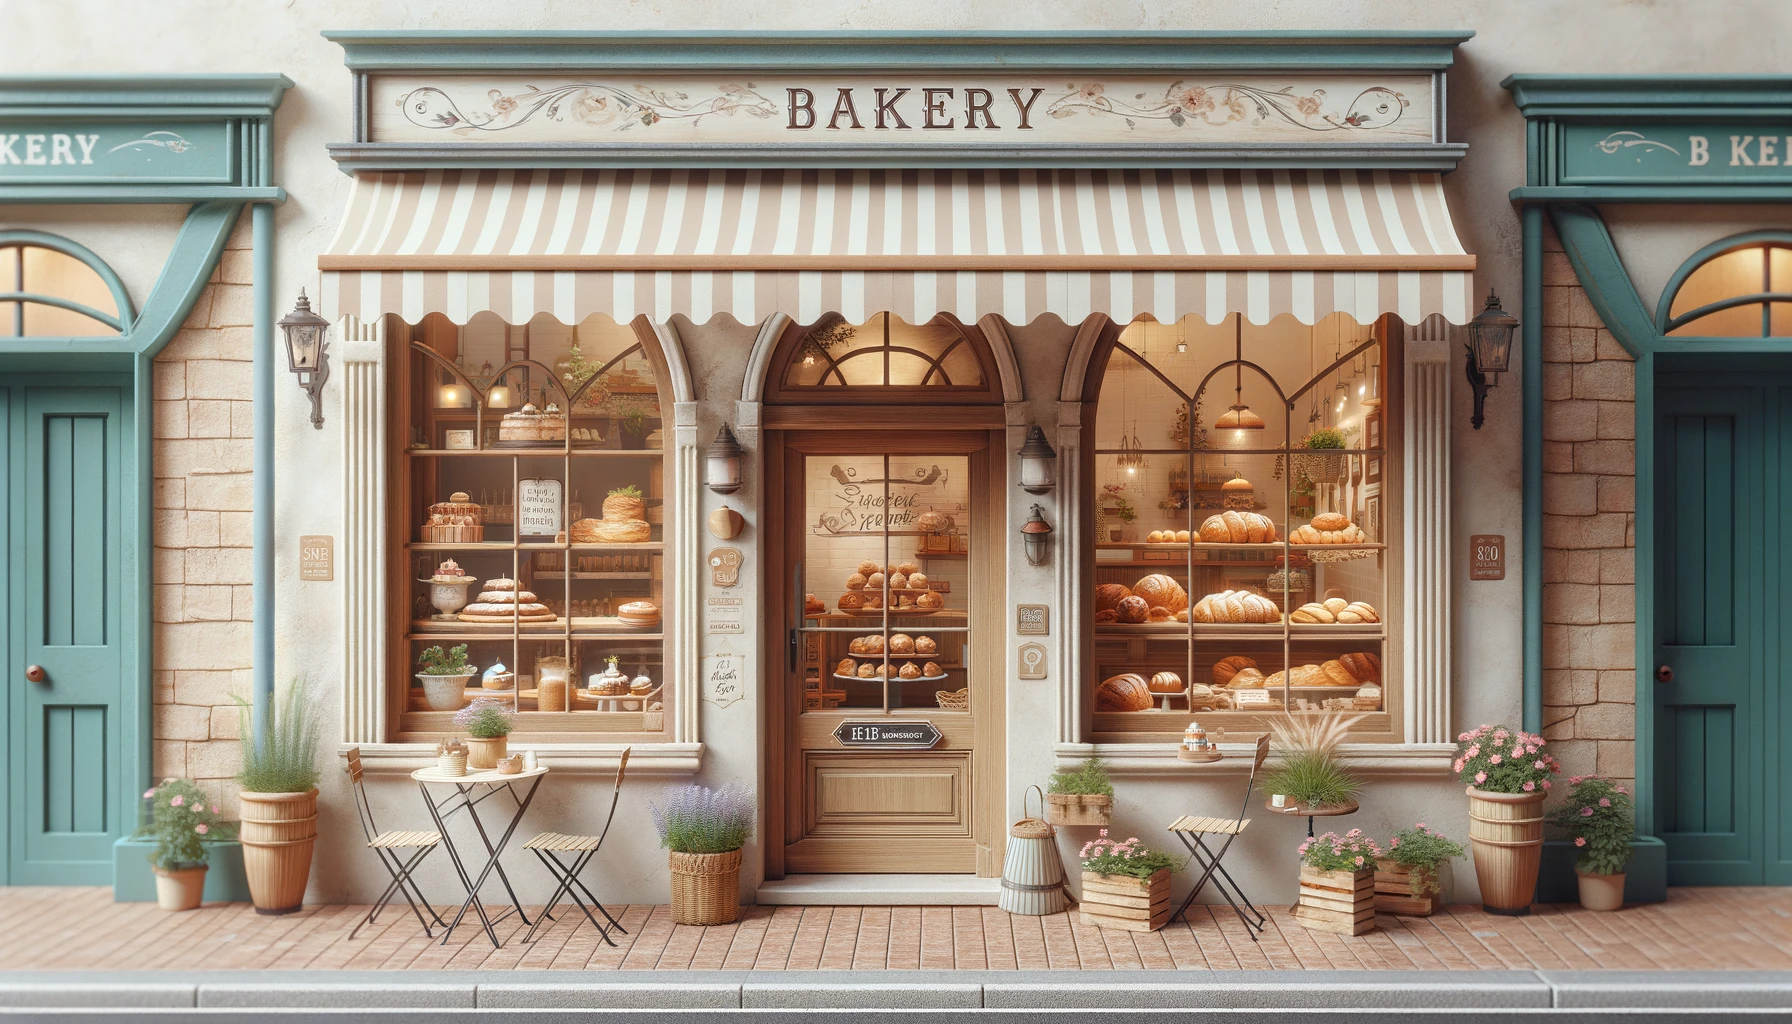 bakery shop frontt design ideas